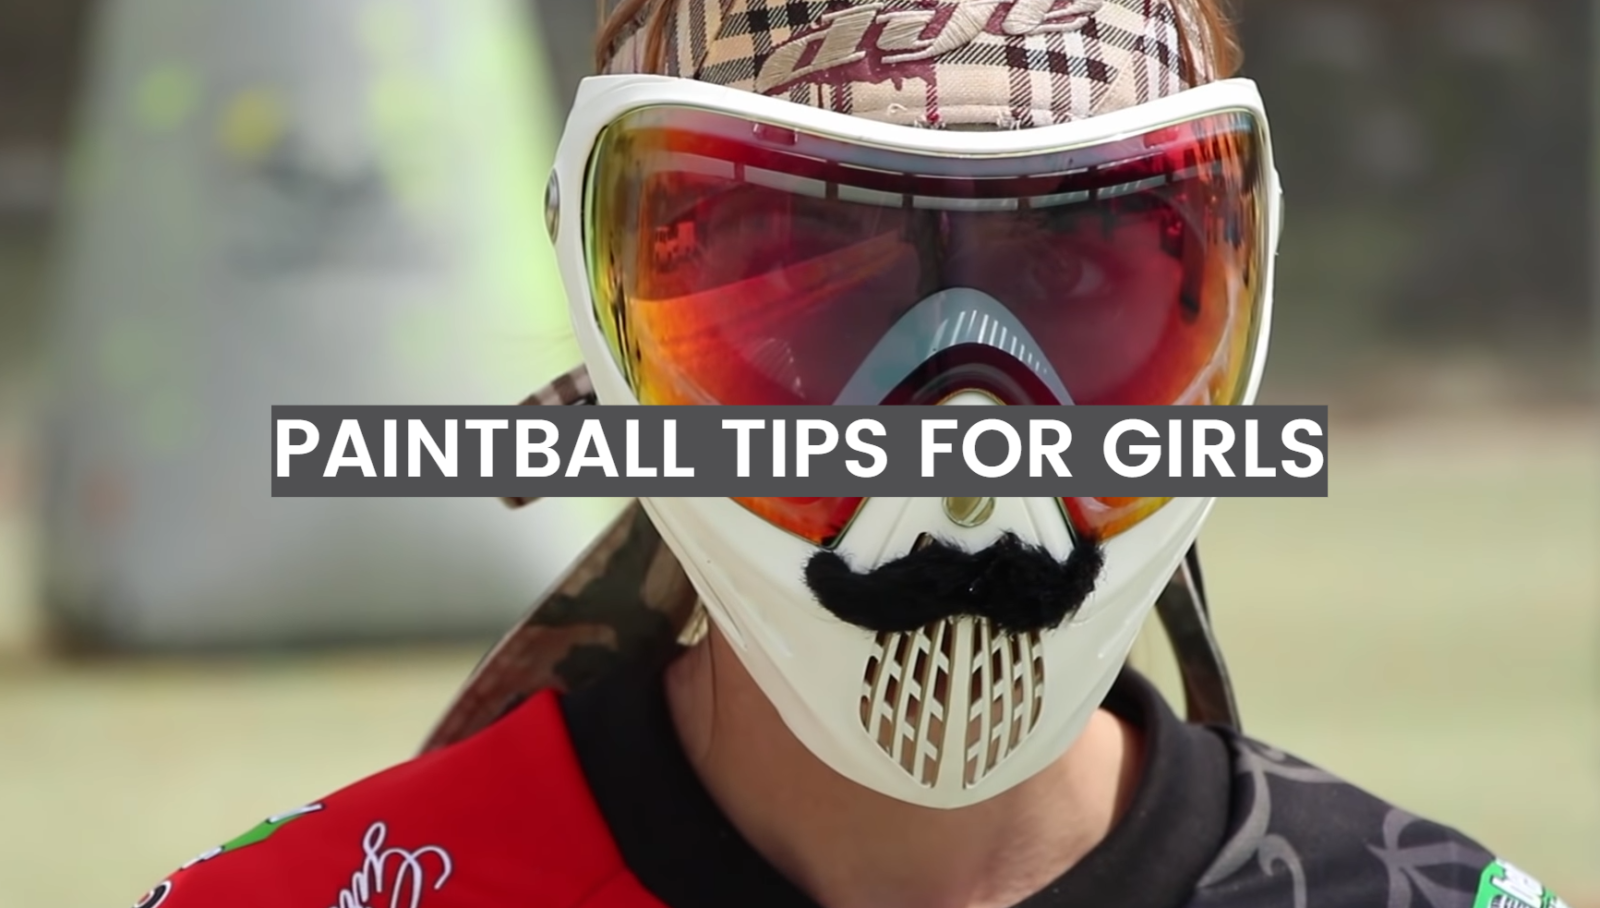 Paintball Tips for Girls